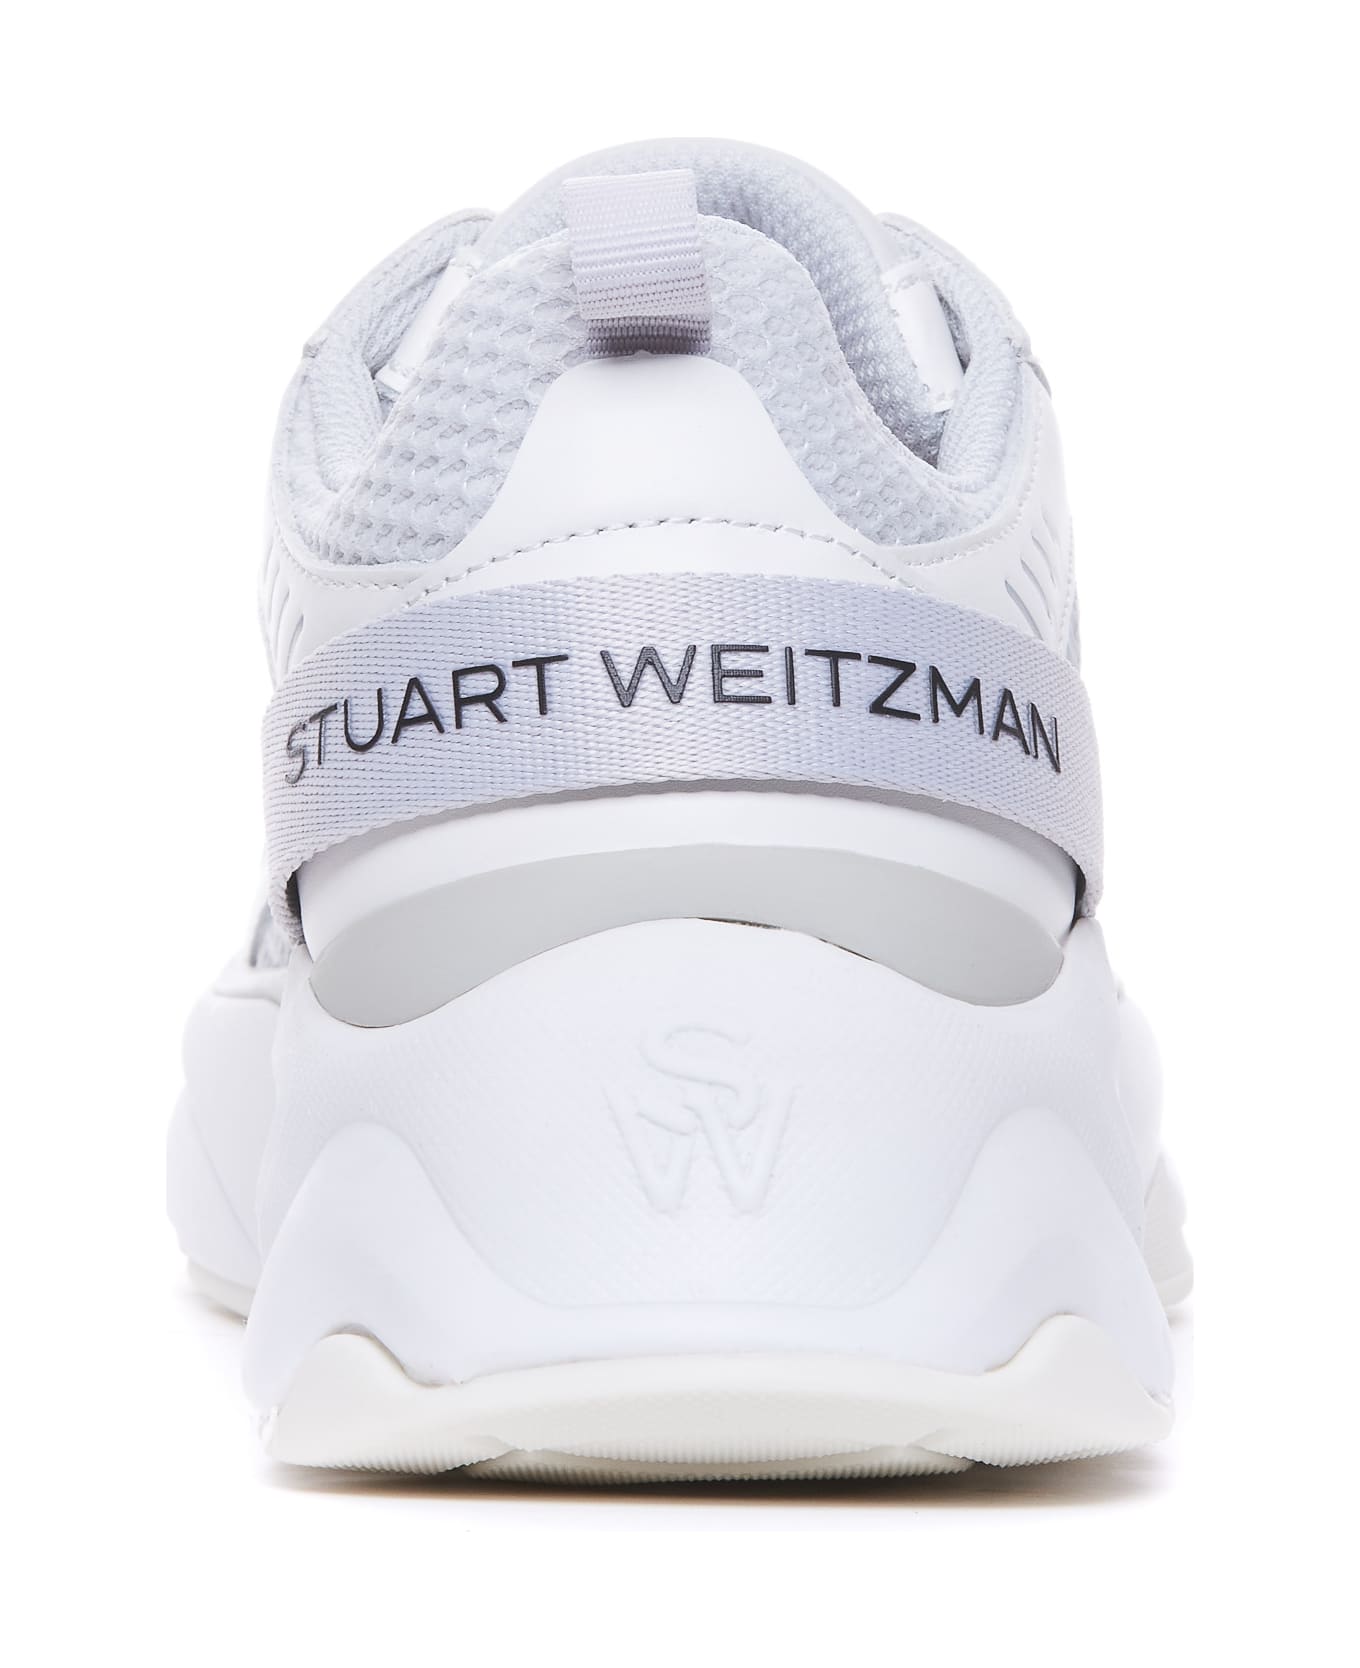 Stuart Weitzman Sw Trainer Sneakers - Grey スニーカー